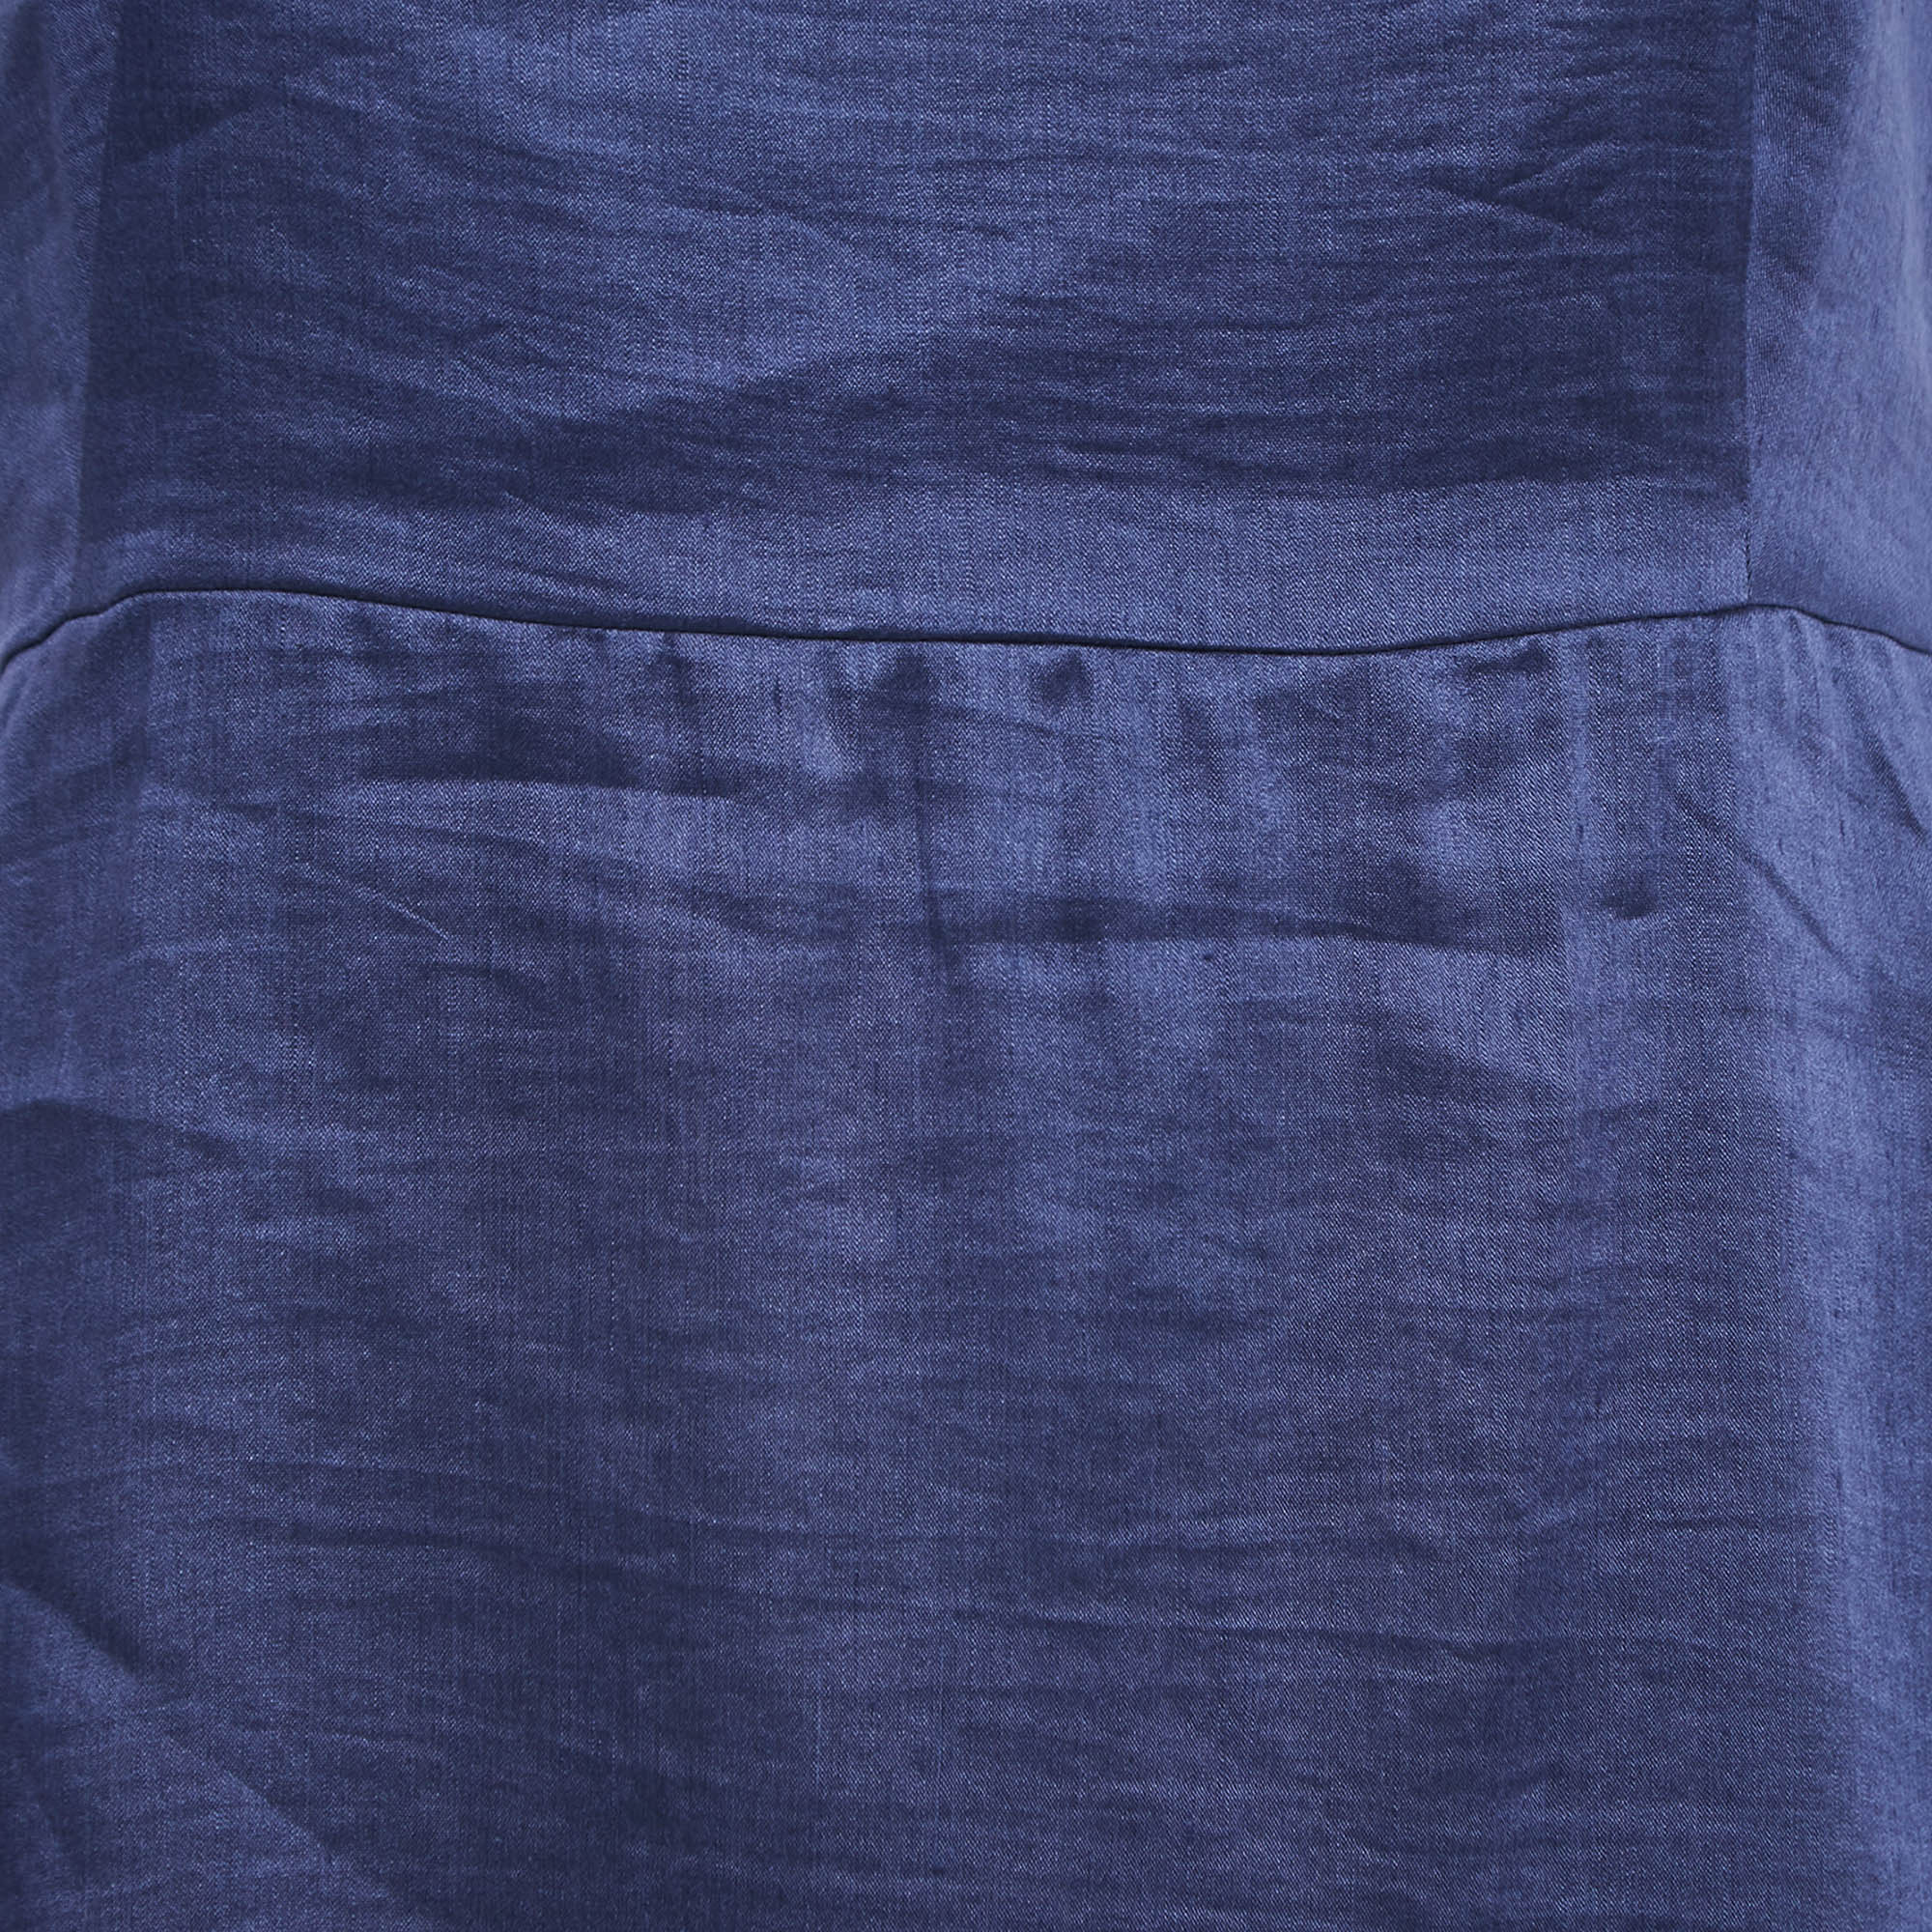 Weekend Max Mara Navy Blue Linen Blend Sleeveless Maxi Dress L